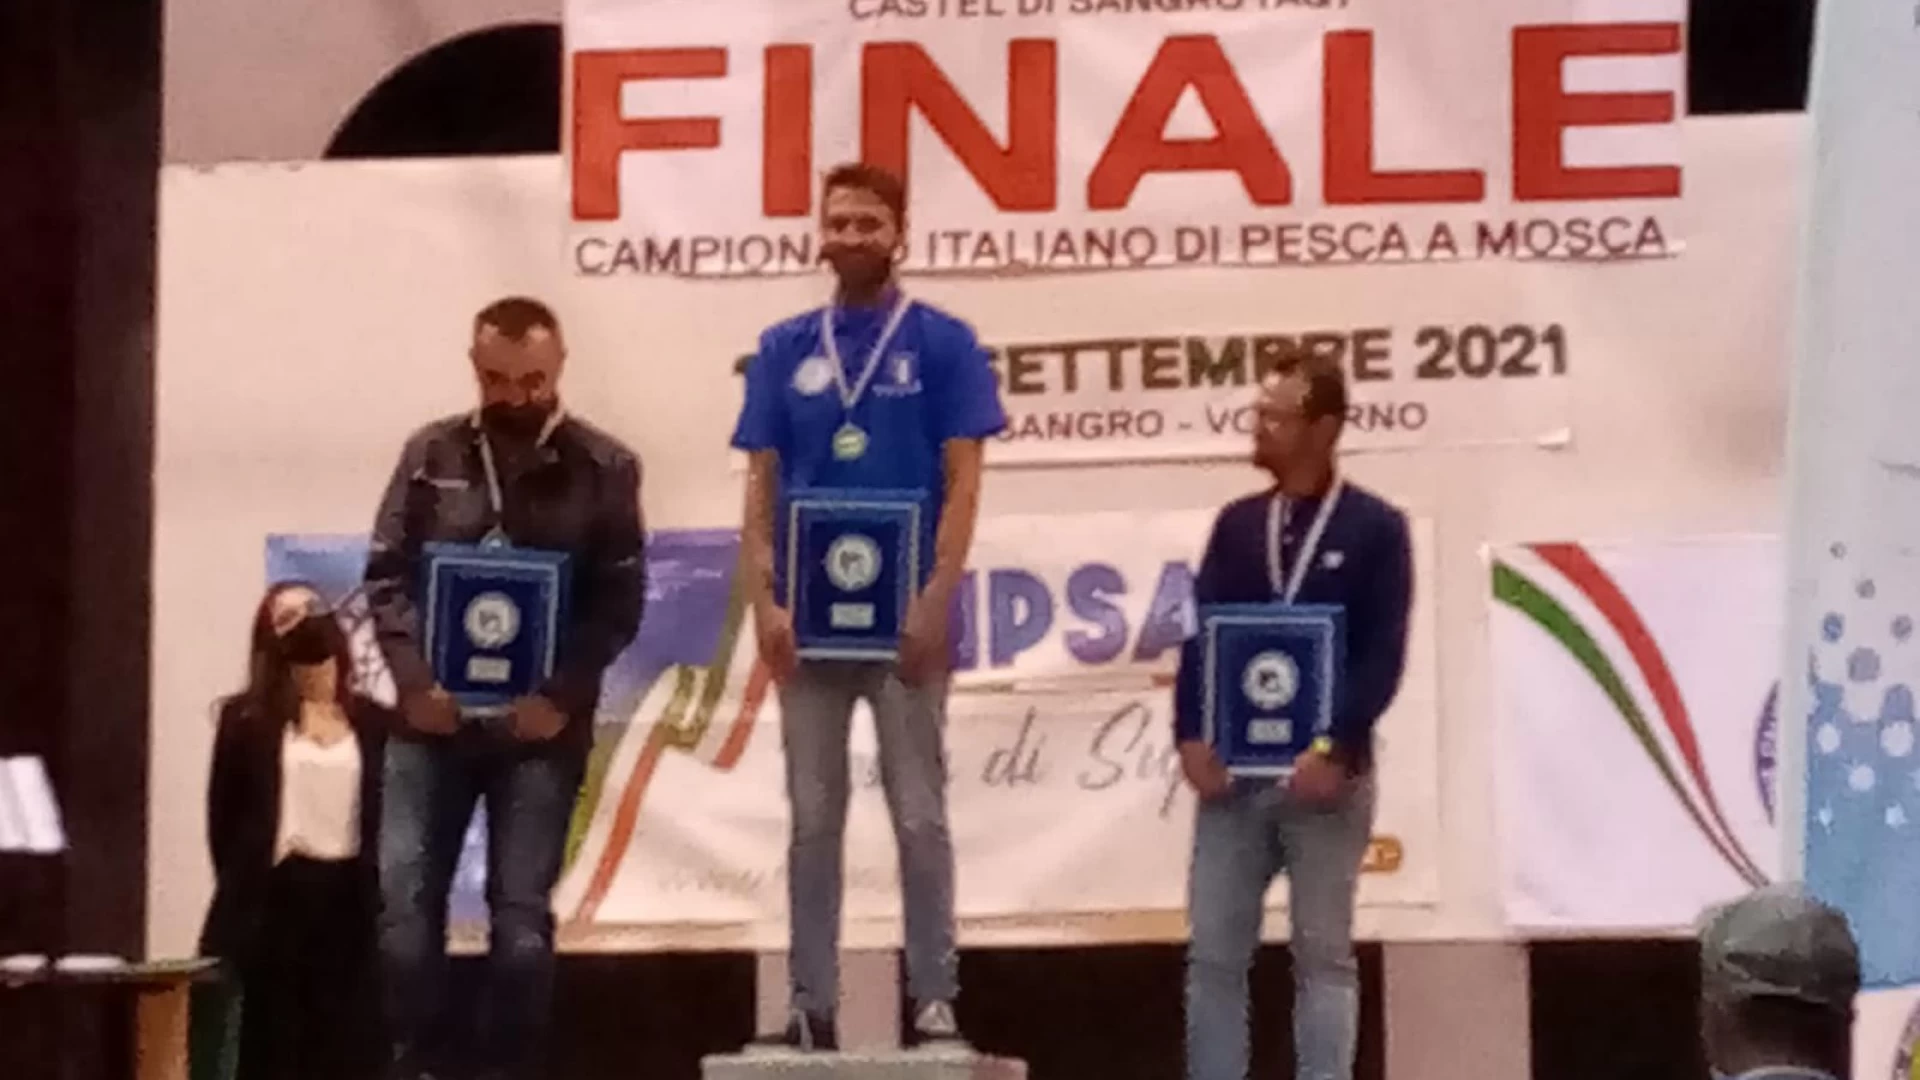 Pesca a Mosca, Andrea Pirone conquista il titolo d Campione Italiano. Altra grande soddisfazione per la Sps Ravindolese.